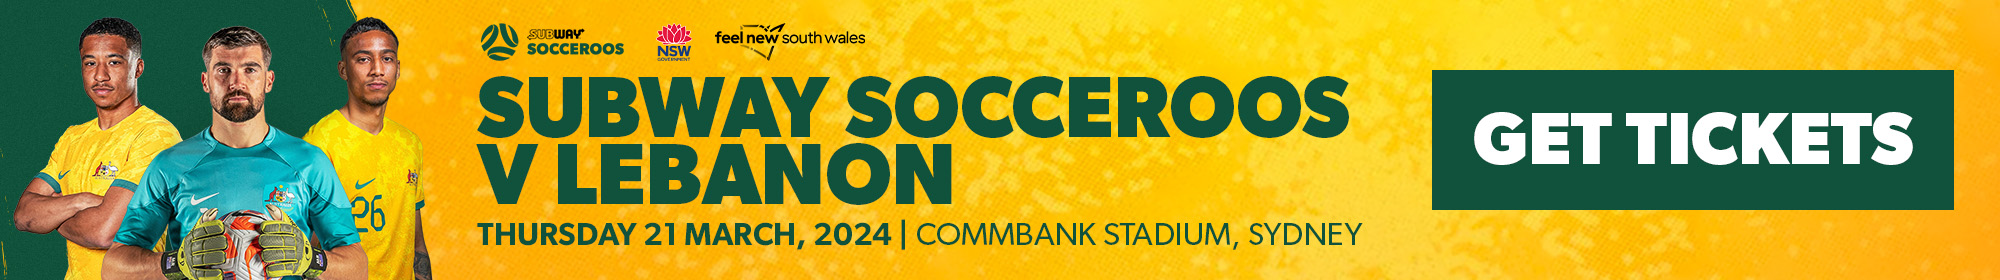 Socceroos vs Lebanon Ticket banner